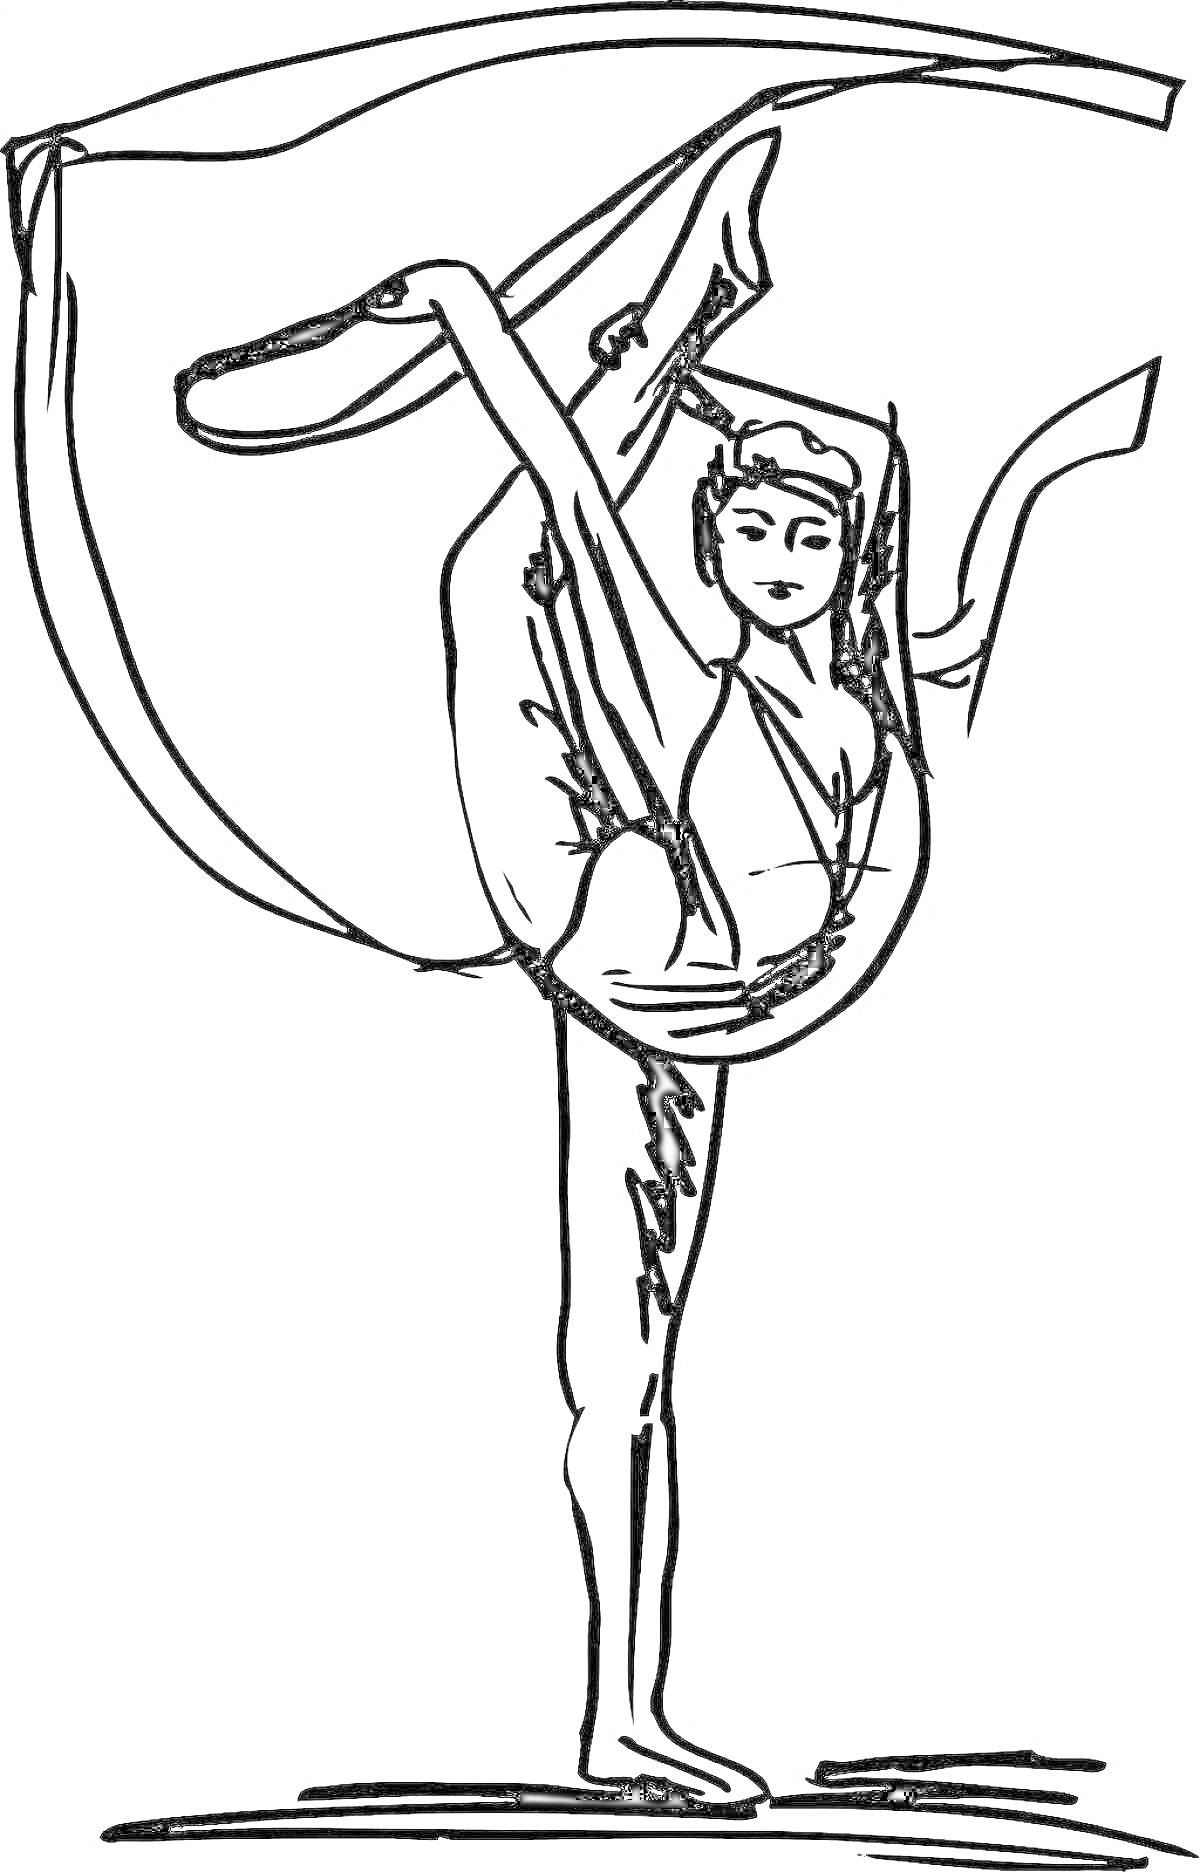 Раскраска Воздушная гимнастка в сложной акробатической позе с лентой